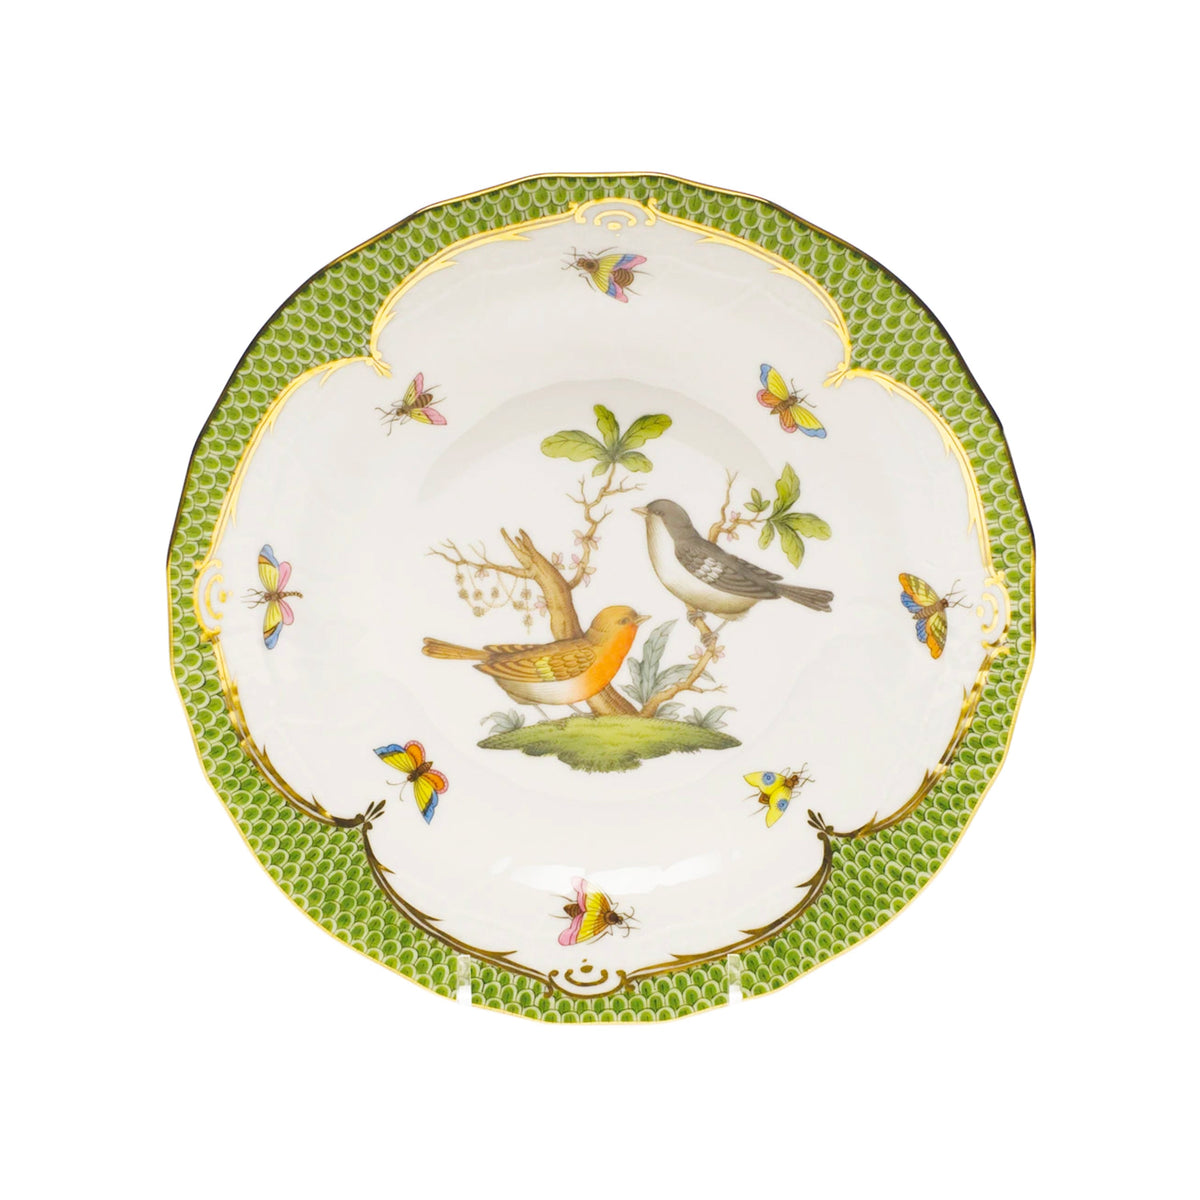 Rothschild Bird Border Dessert Plate